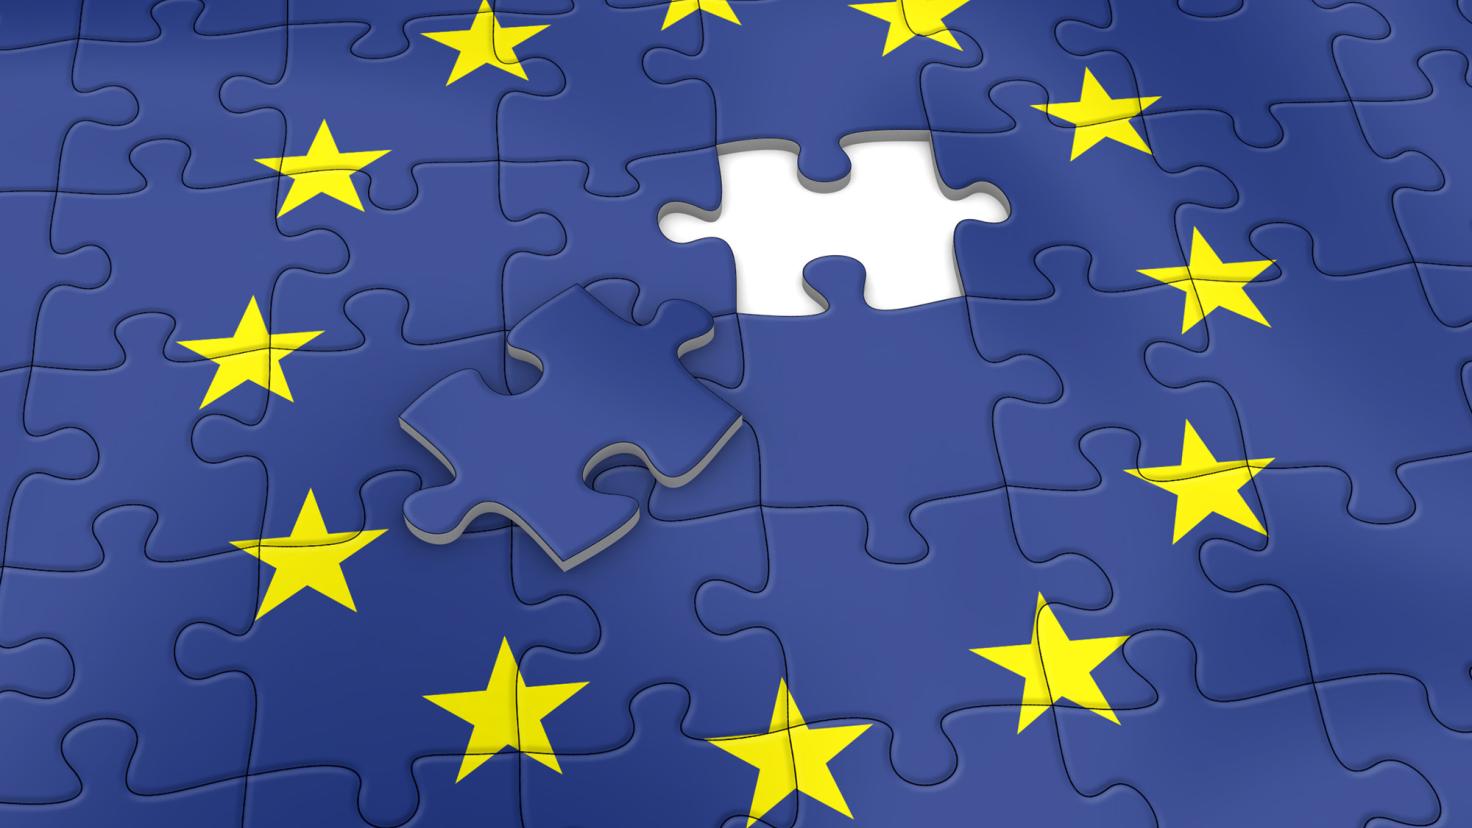 Ultima piesă a unui puzzle cu steagul european se află deasupra pieselor completate